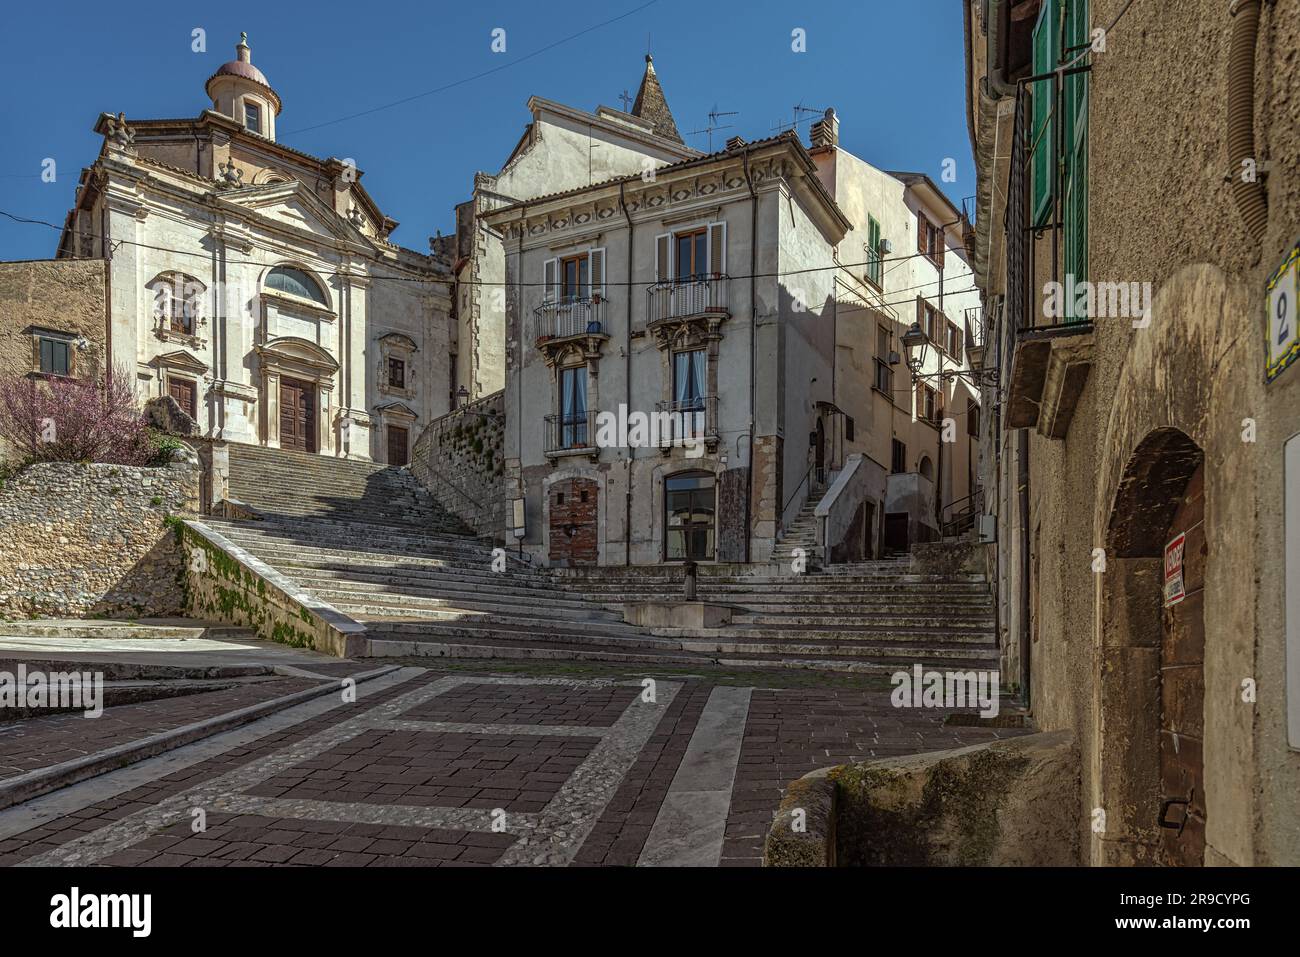 Werfen Sie einen Blick auf die Treppe, die zur Kirche der Heiligen Dreifaltigkeit und zur Kirche San Lorenzo in der mittelalterlichen Stadt Popoli führt. Abruzzen Stockfoto